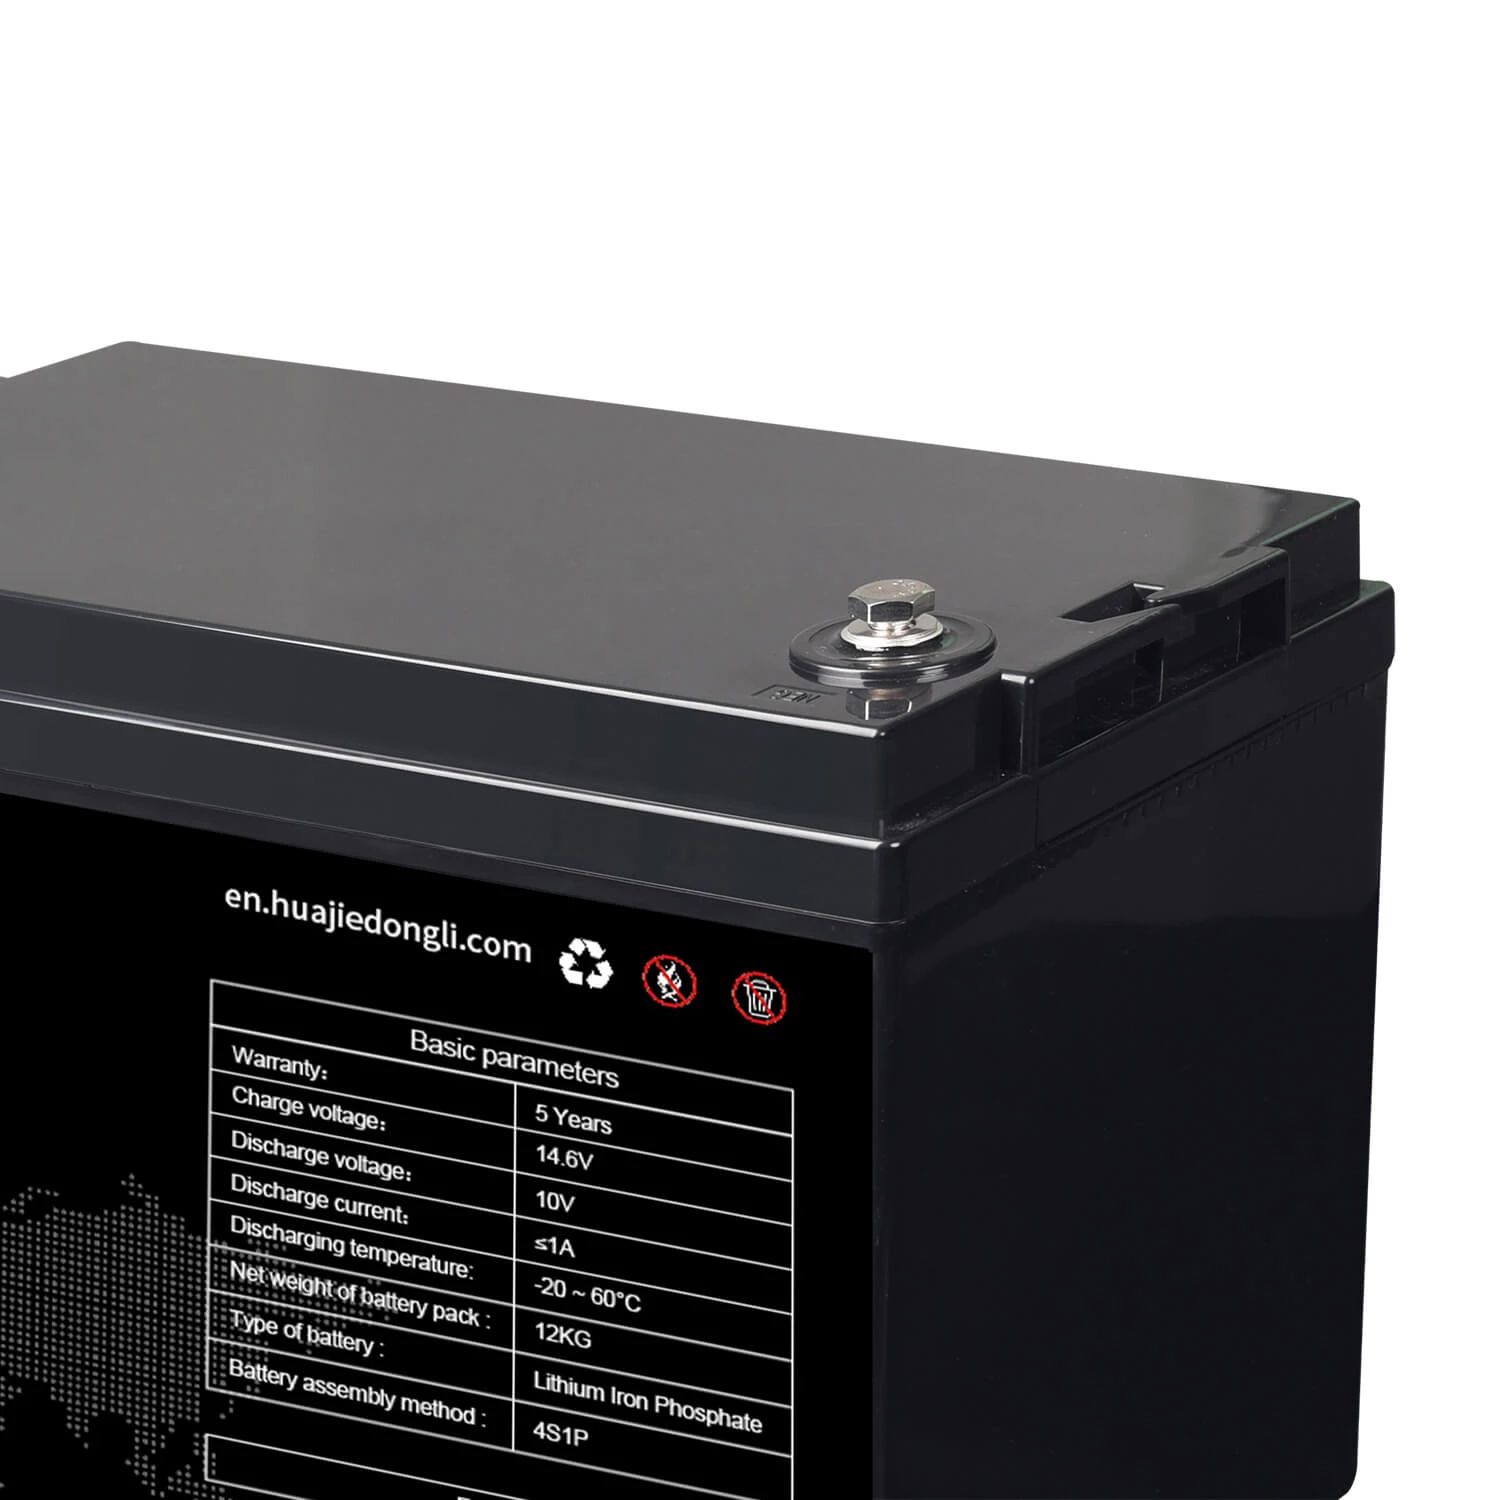 12V 100AH LiFePO4 batteripaket järnfosfat litiumbatteri